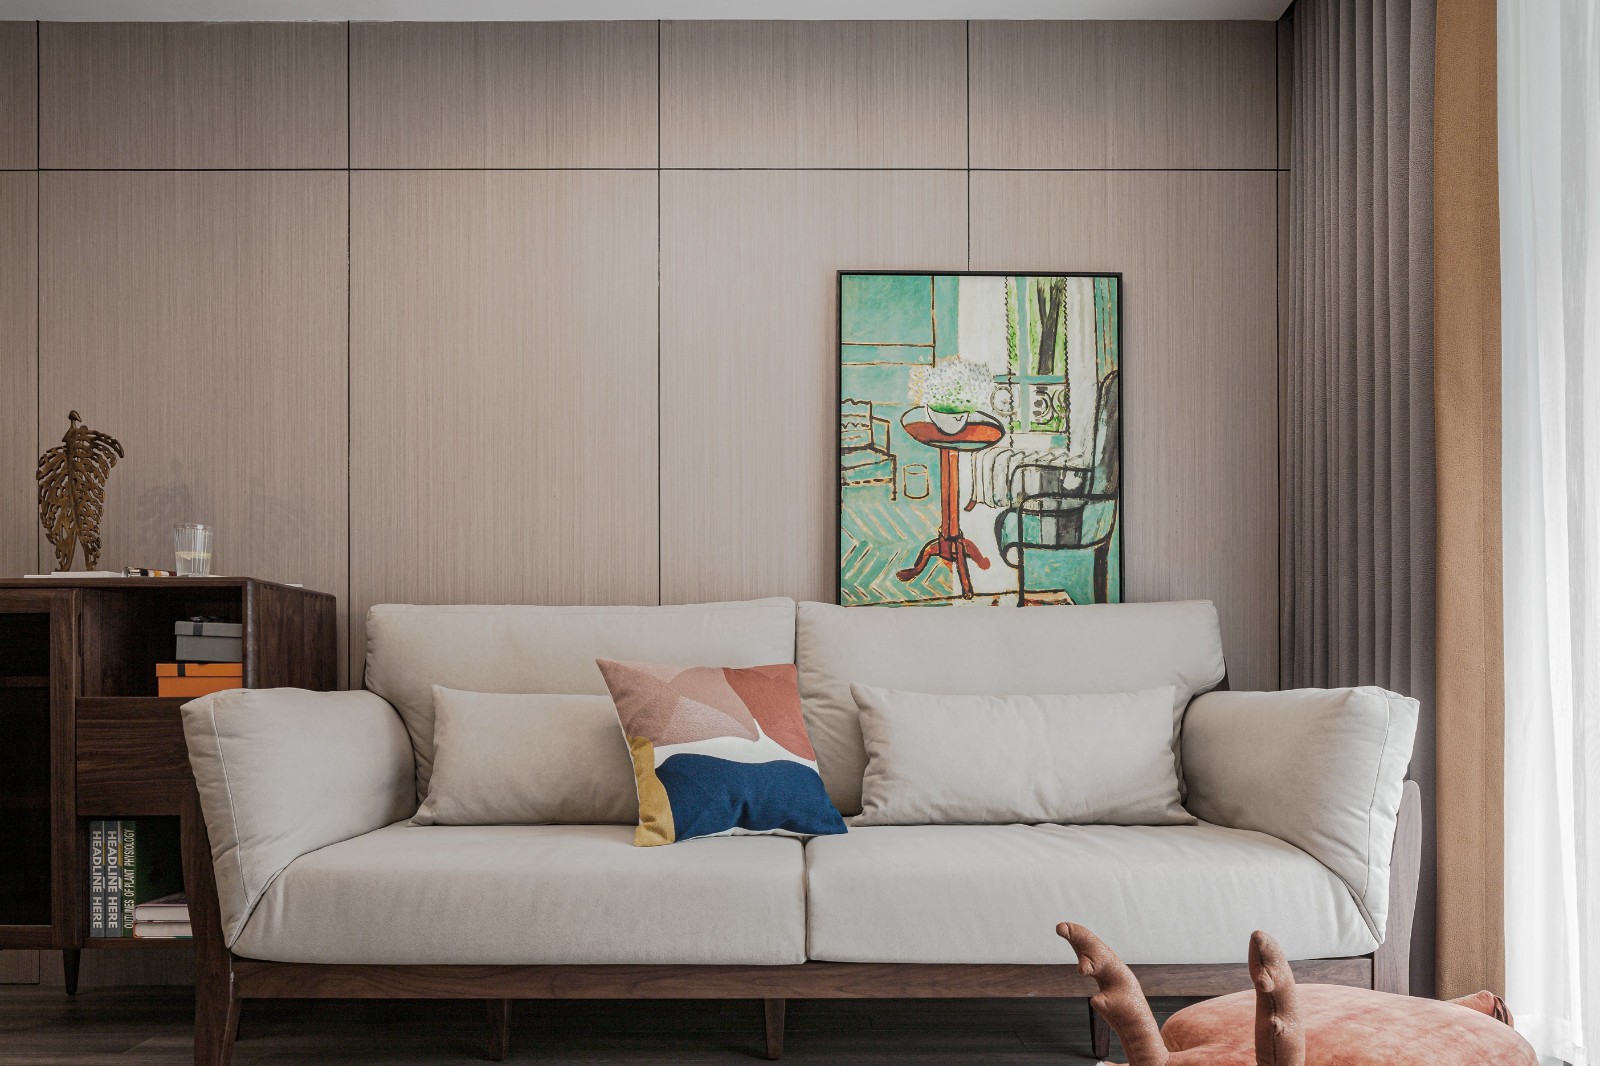 客厅户型方正,整体木饰面板装饰沙发背景墙,原木家具搭配米色布艺沙发